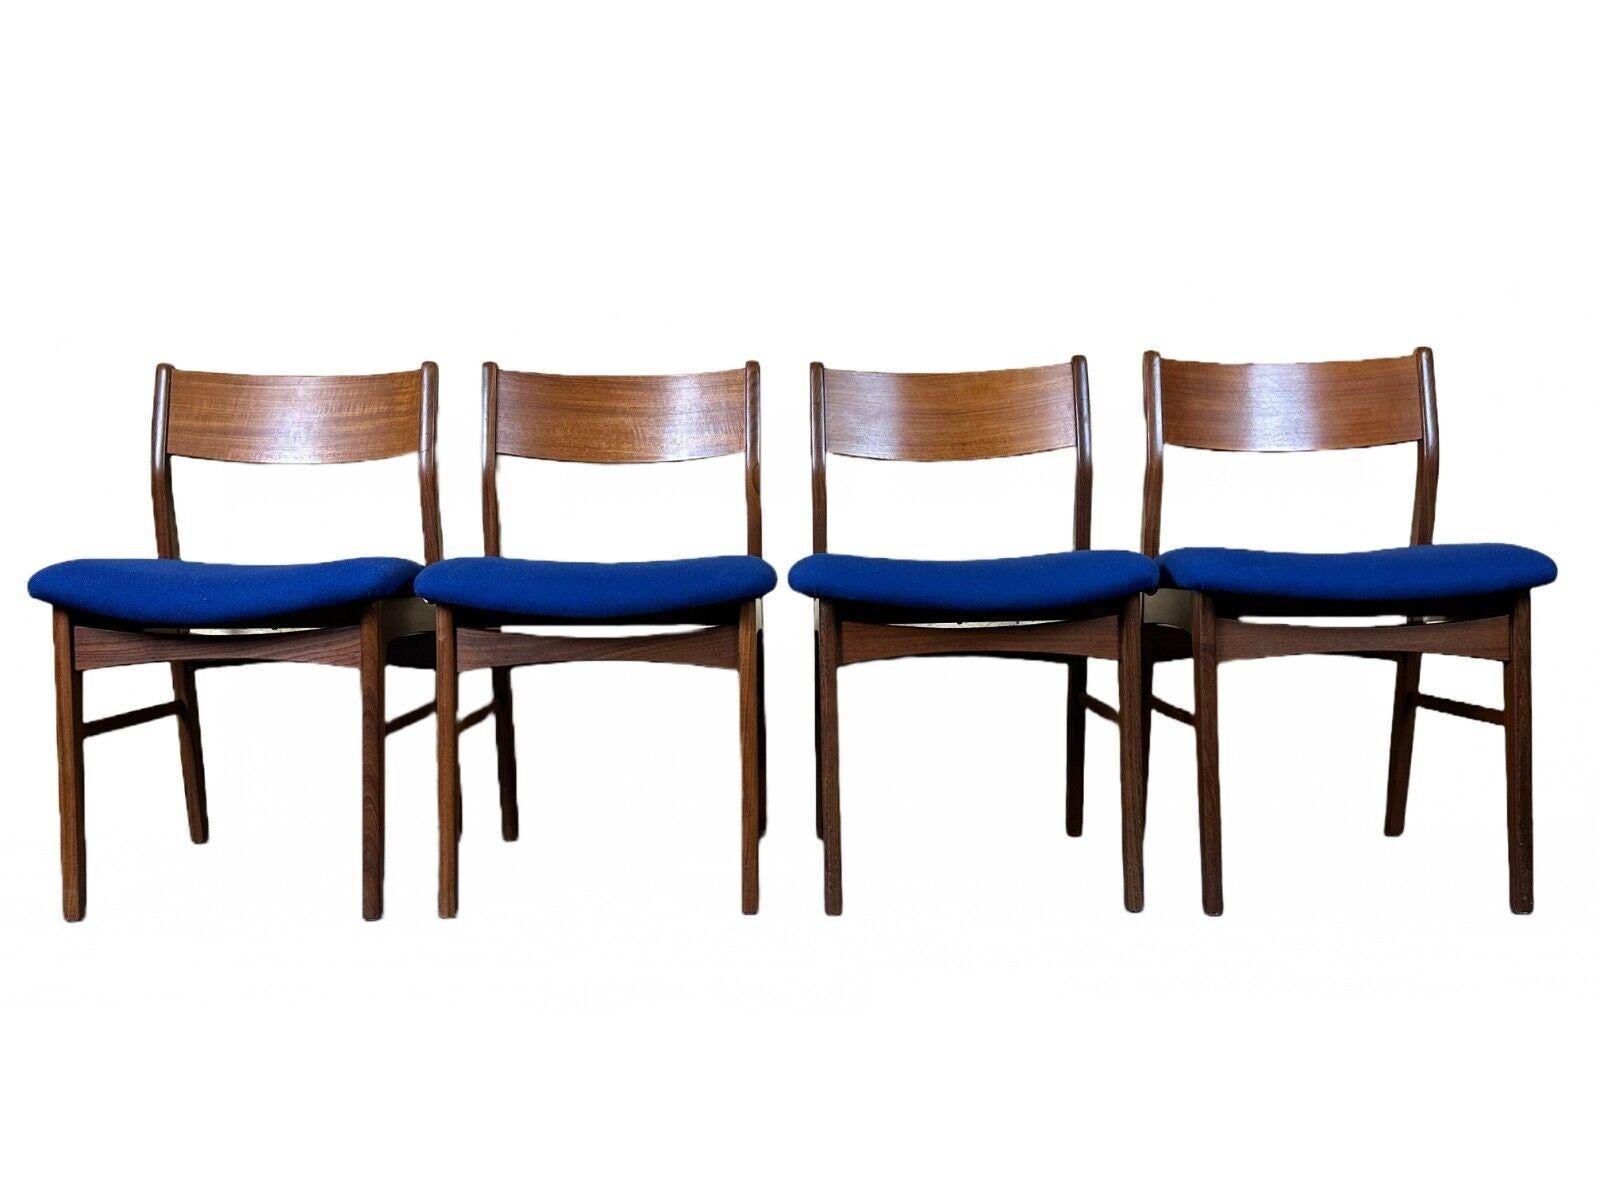 4x 60s 70s Teak Chair Dining Chair Danish Modern Design Denmark

Objet : 4x chaise

Fabricant :

Condit : bon

Âge : environ 1960-1970

Dimensions :

Largeur = 50 cm
Profondeur = 46cm
Hauteur = 79cm
Hauteur d'assise = 46cm

MATERIAL : teck,